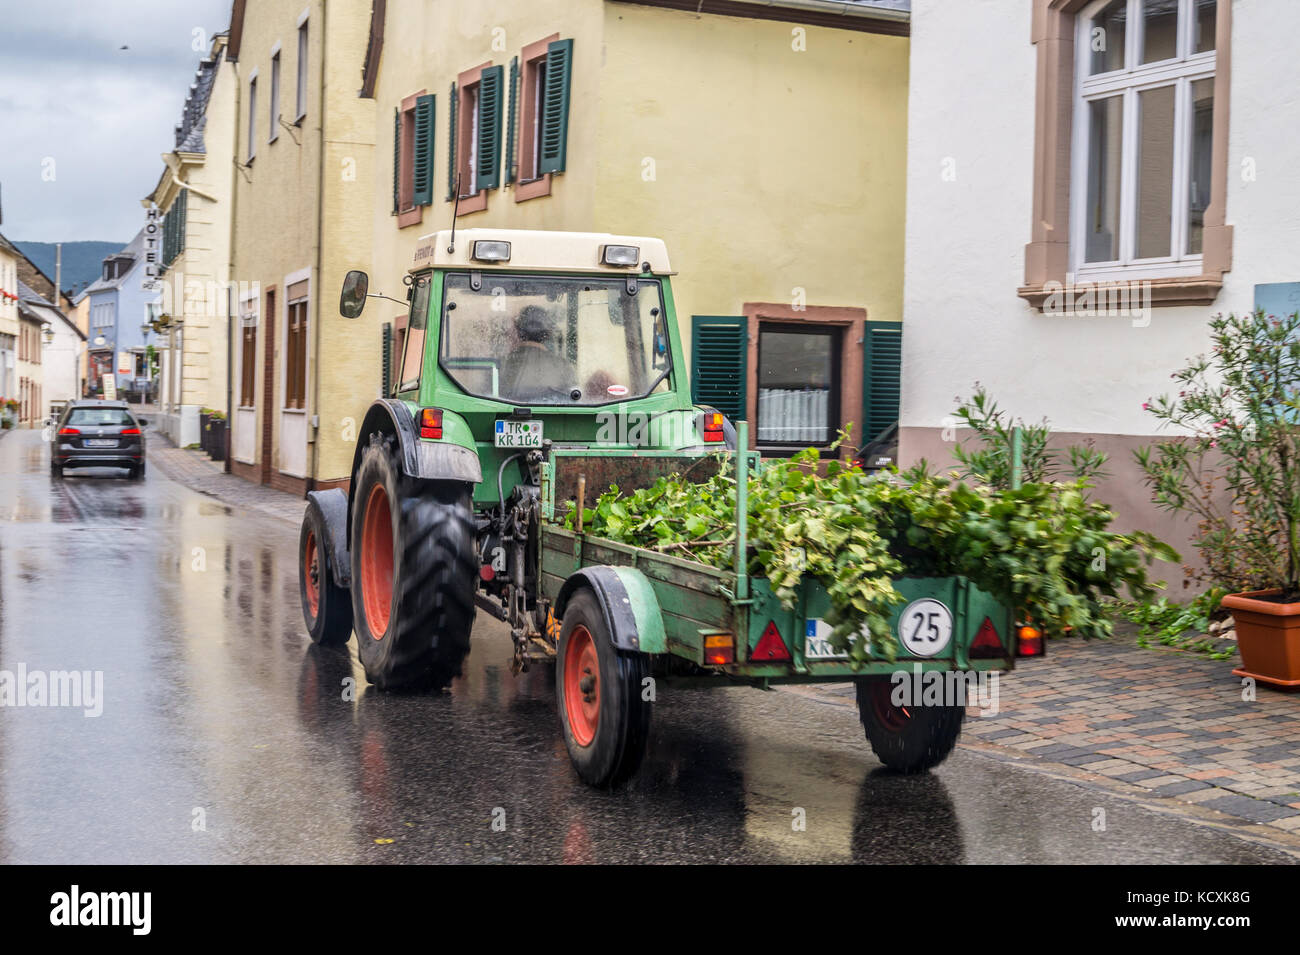 Ein Winzer Fendt Traktor und Anhänger die weinblätter Für eine Straße Wein  festical Neumagen - Dhron, Mosel, Rheinland-Pfalz, Deutschland  Stockfotografie - Alamy